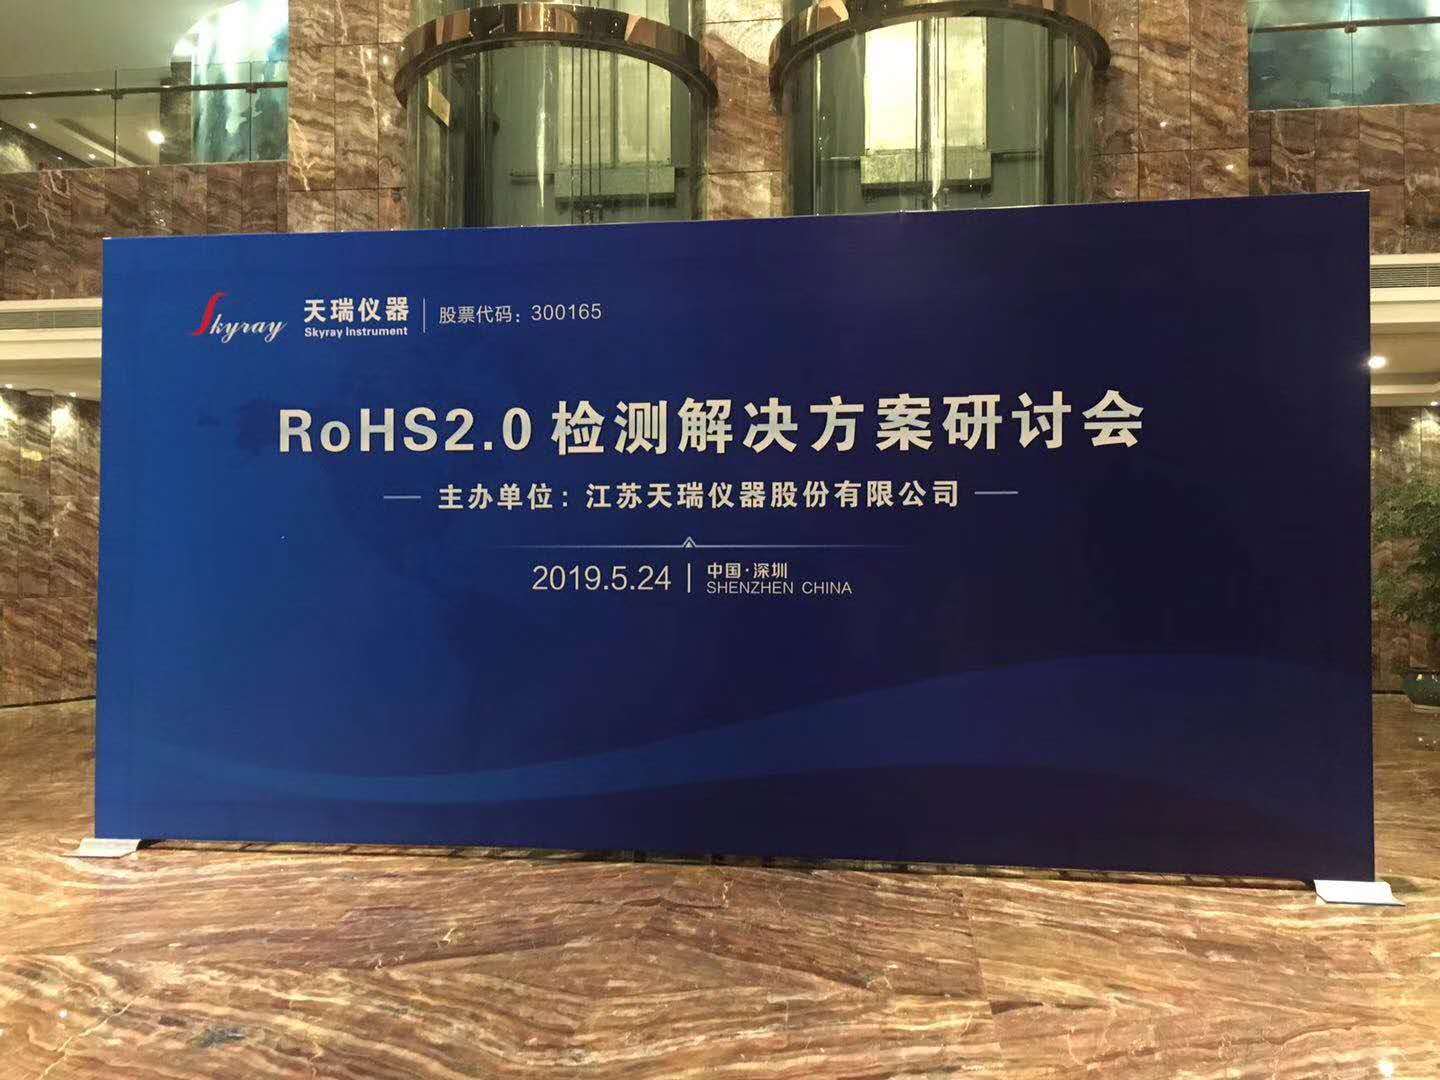 ROHS2.0十项环保检测仪价格